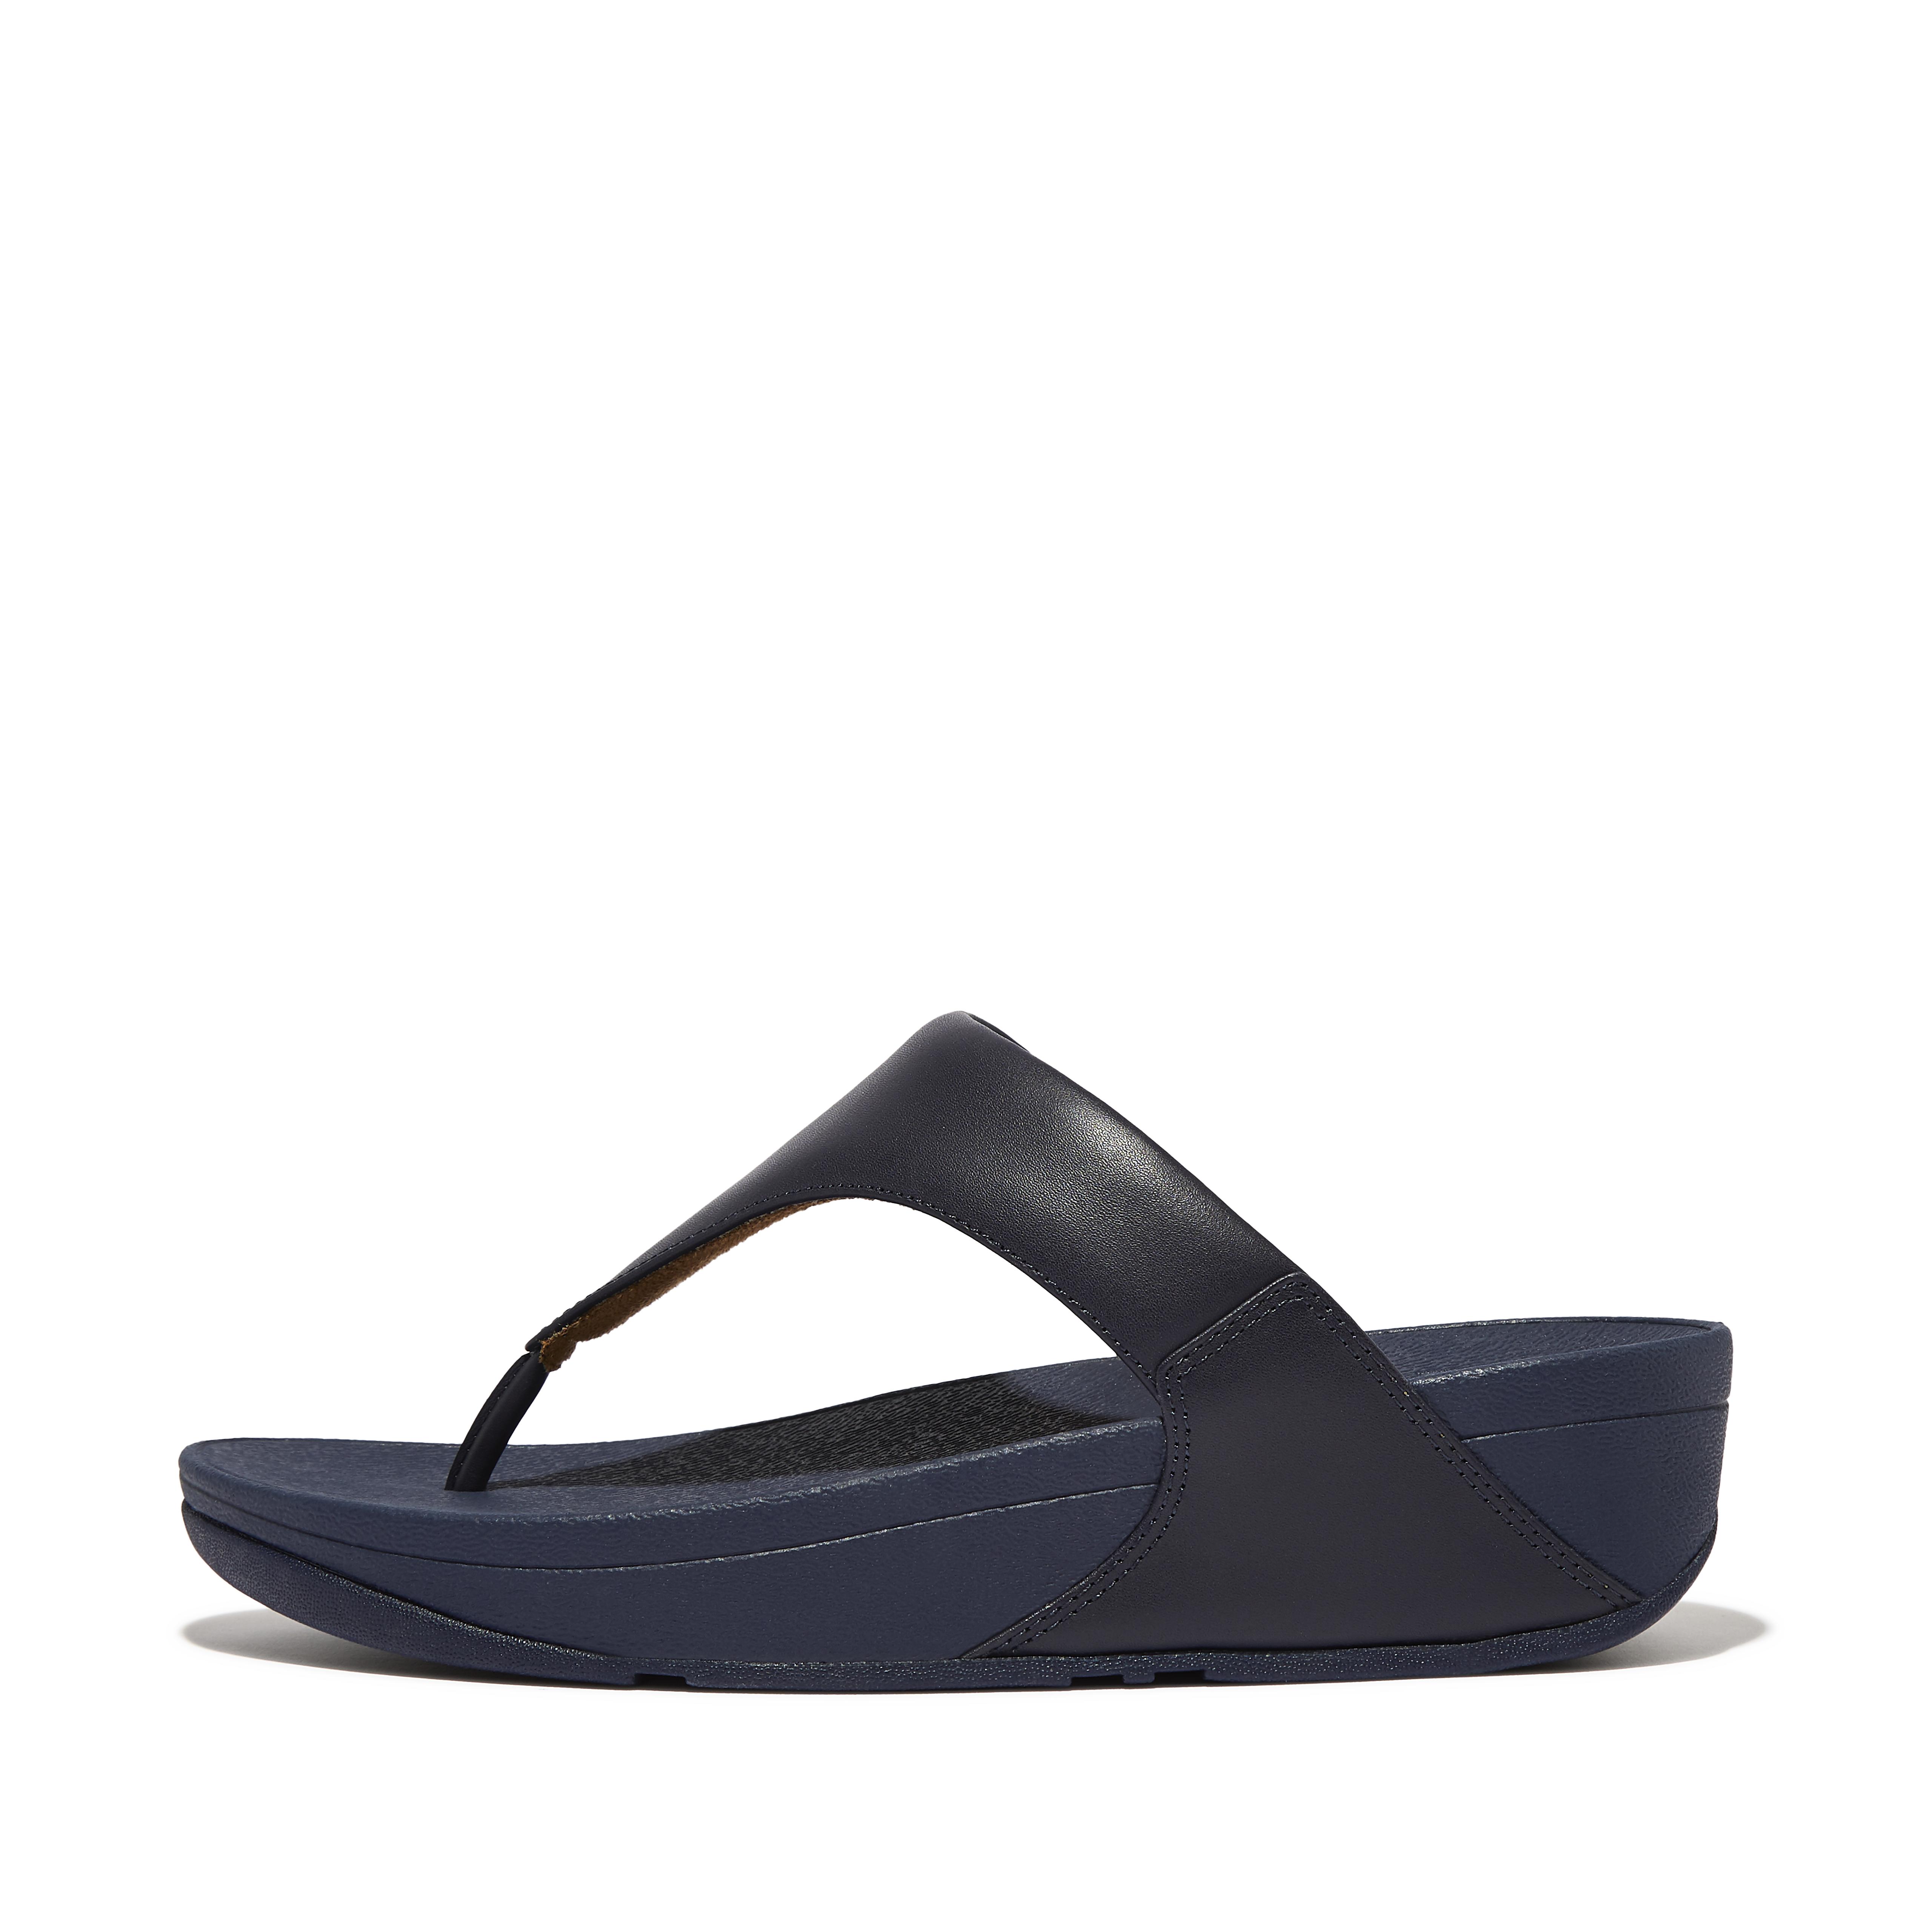 핏플랍 샌들 Fitflop Leather Toe-Post Sandals,Deep Blue